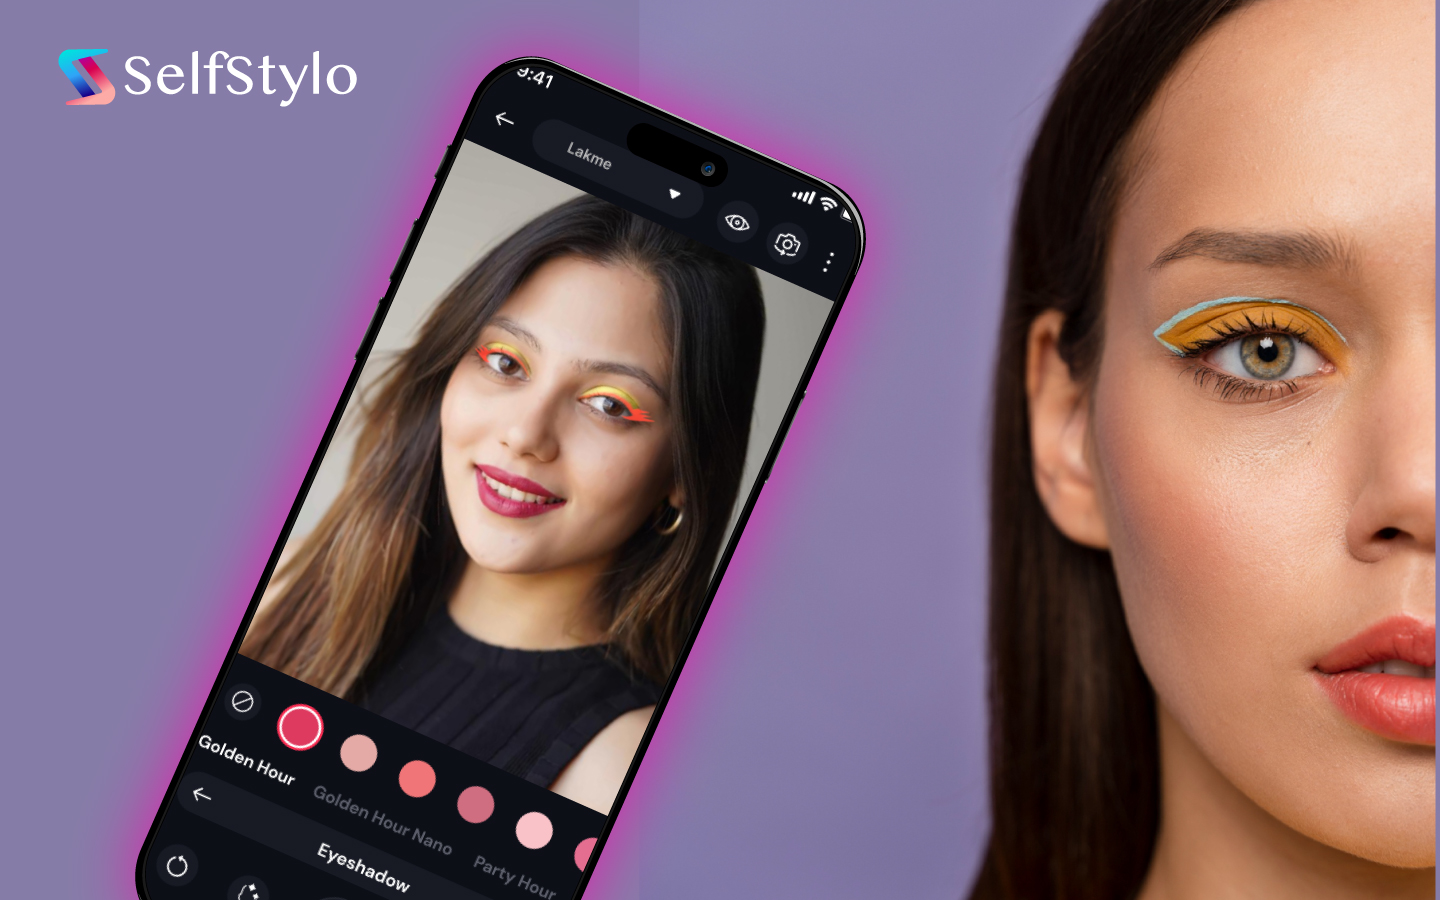 eyebrow makeup apps selfstylo